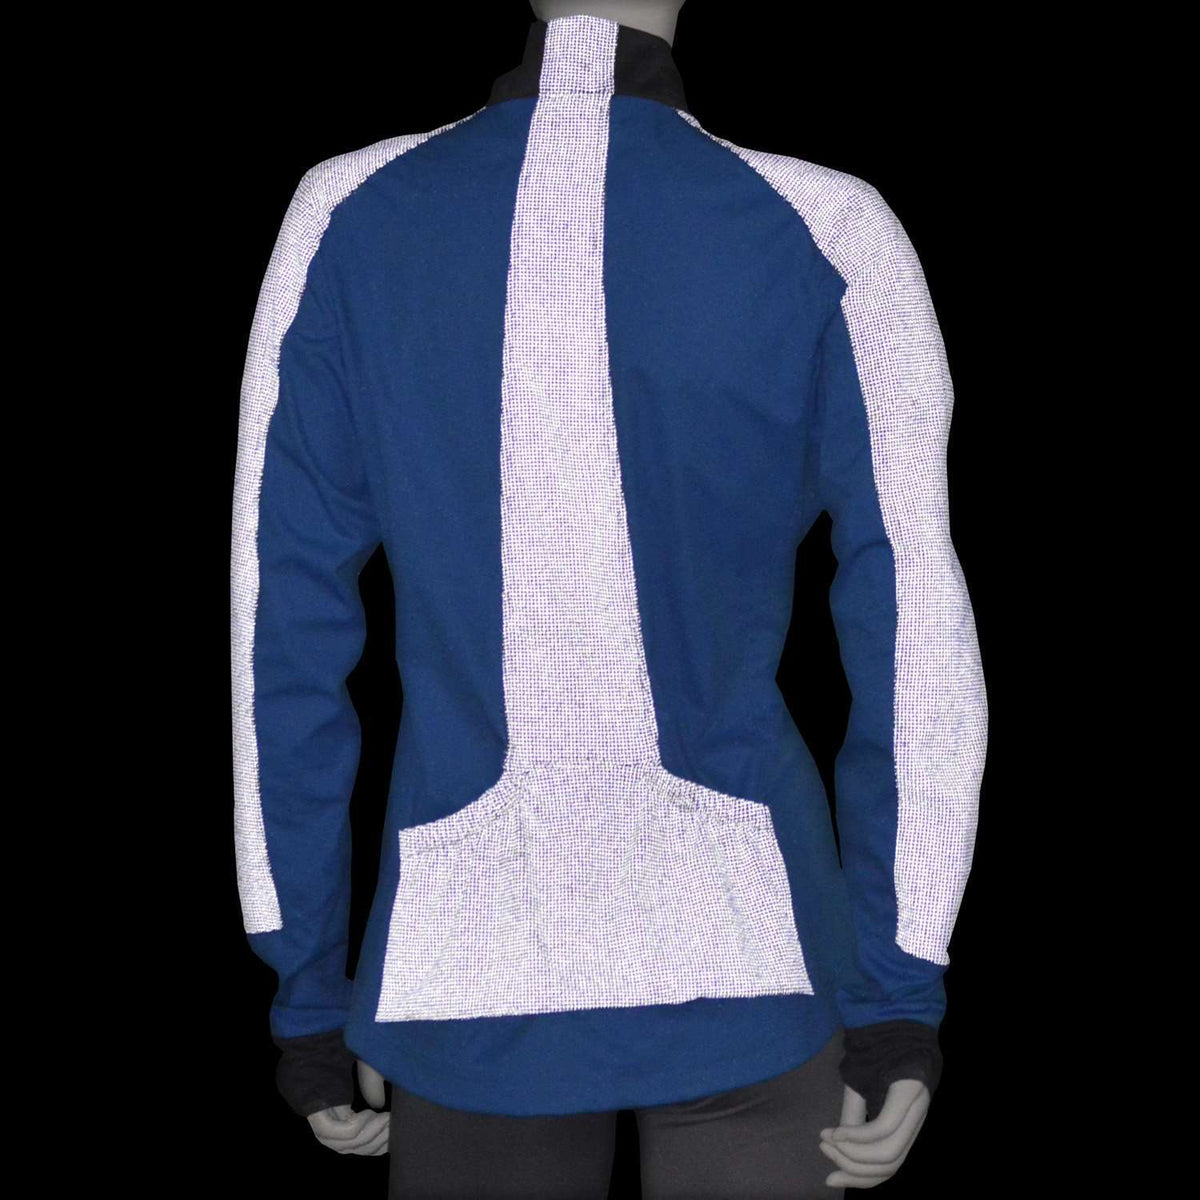 Albany Reflective Women's Softshell Jacket in Hawaiian Blue/Graphite